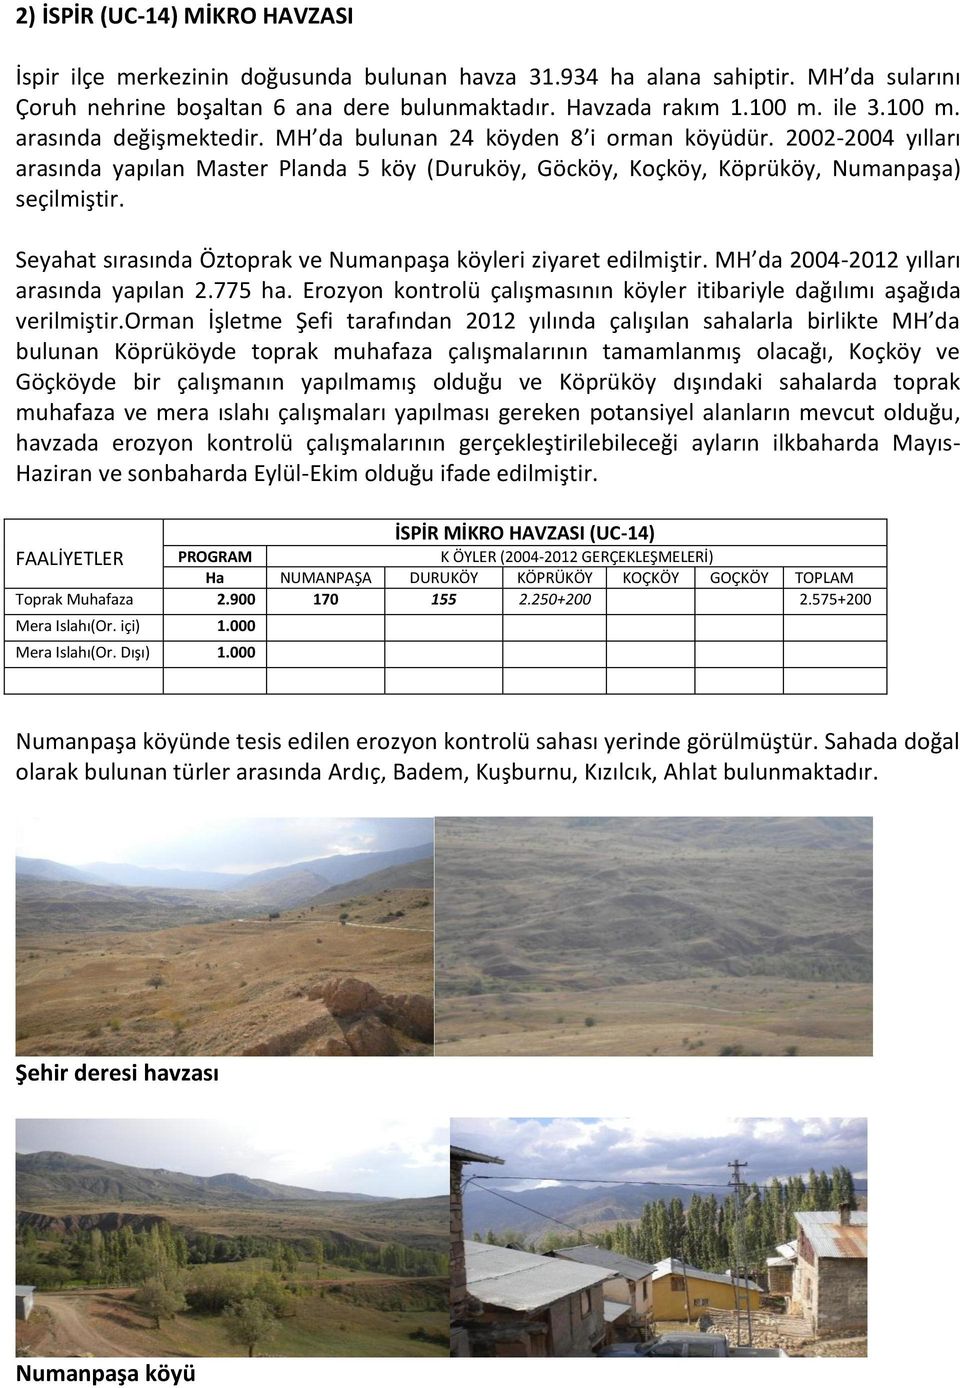 Seyahat sırasında Öztoprak ve Numanpaşa köyleri ziyaret edilmiştir. MH da 2004-2012 yılları arasında yapılan 2.775 ha. Erozyon kontrolü çalışmasının köyler itibariyle dağılımı aşağıda verilmiştir.